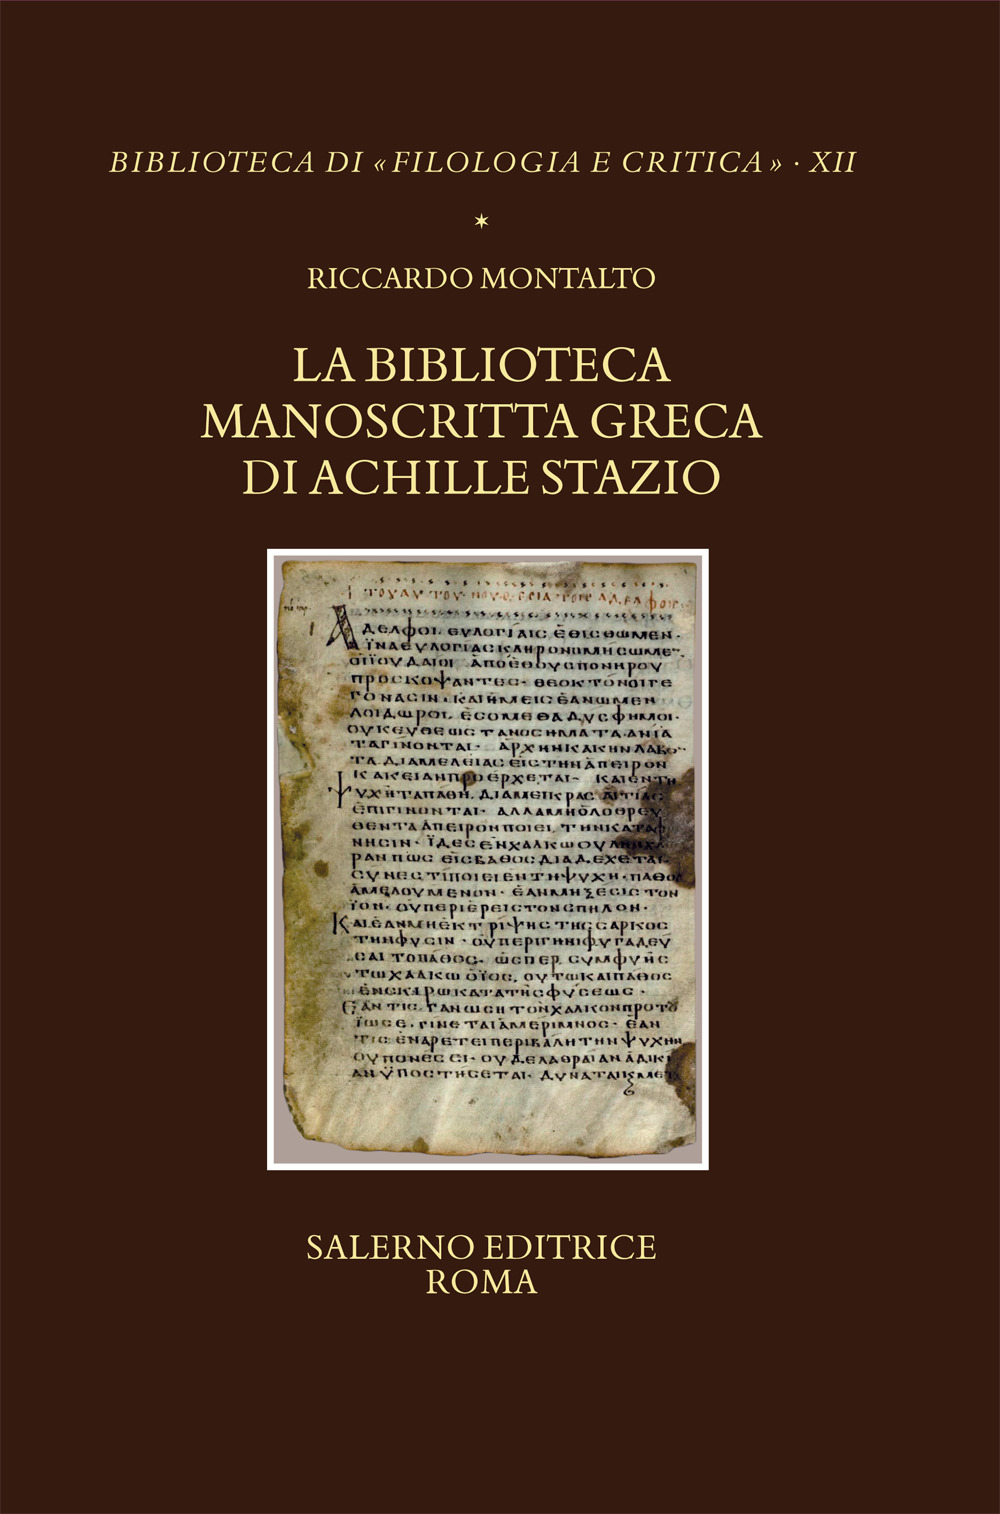 La biblioteca manoscritta greca di Achille Stazio